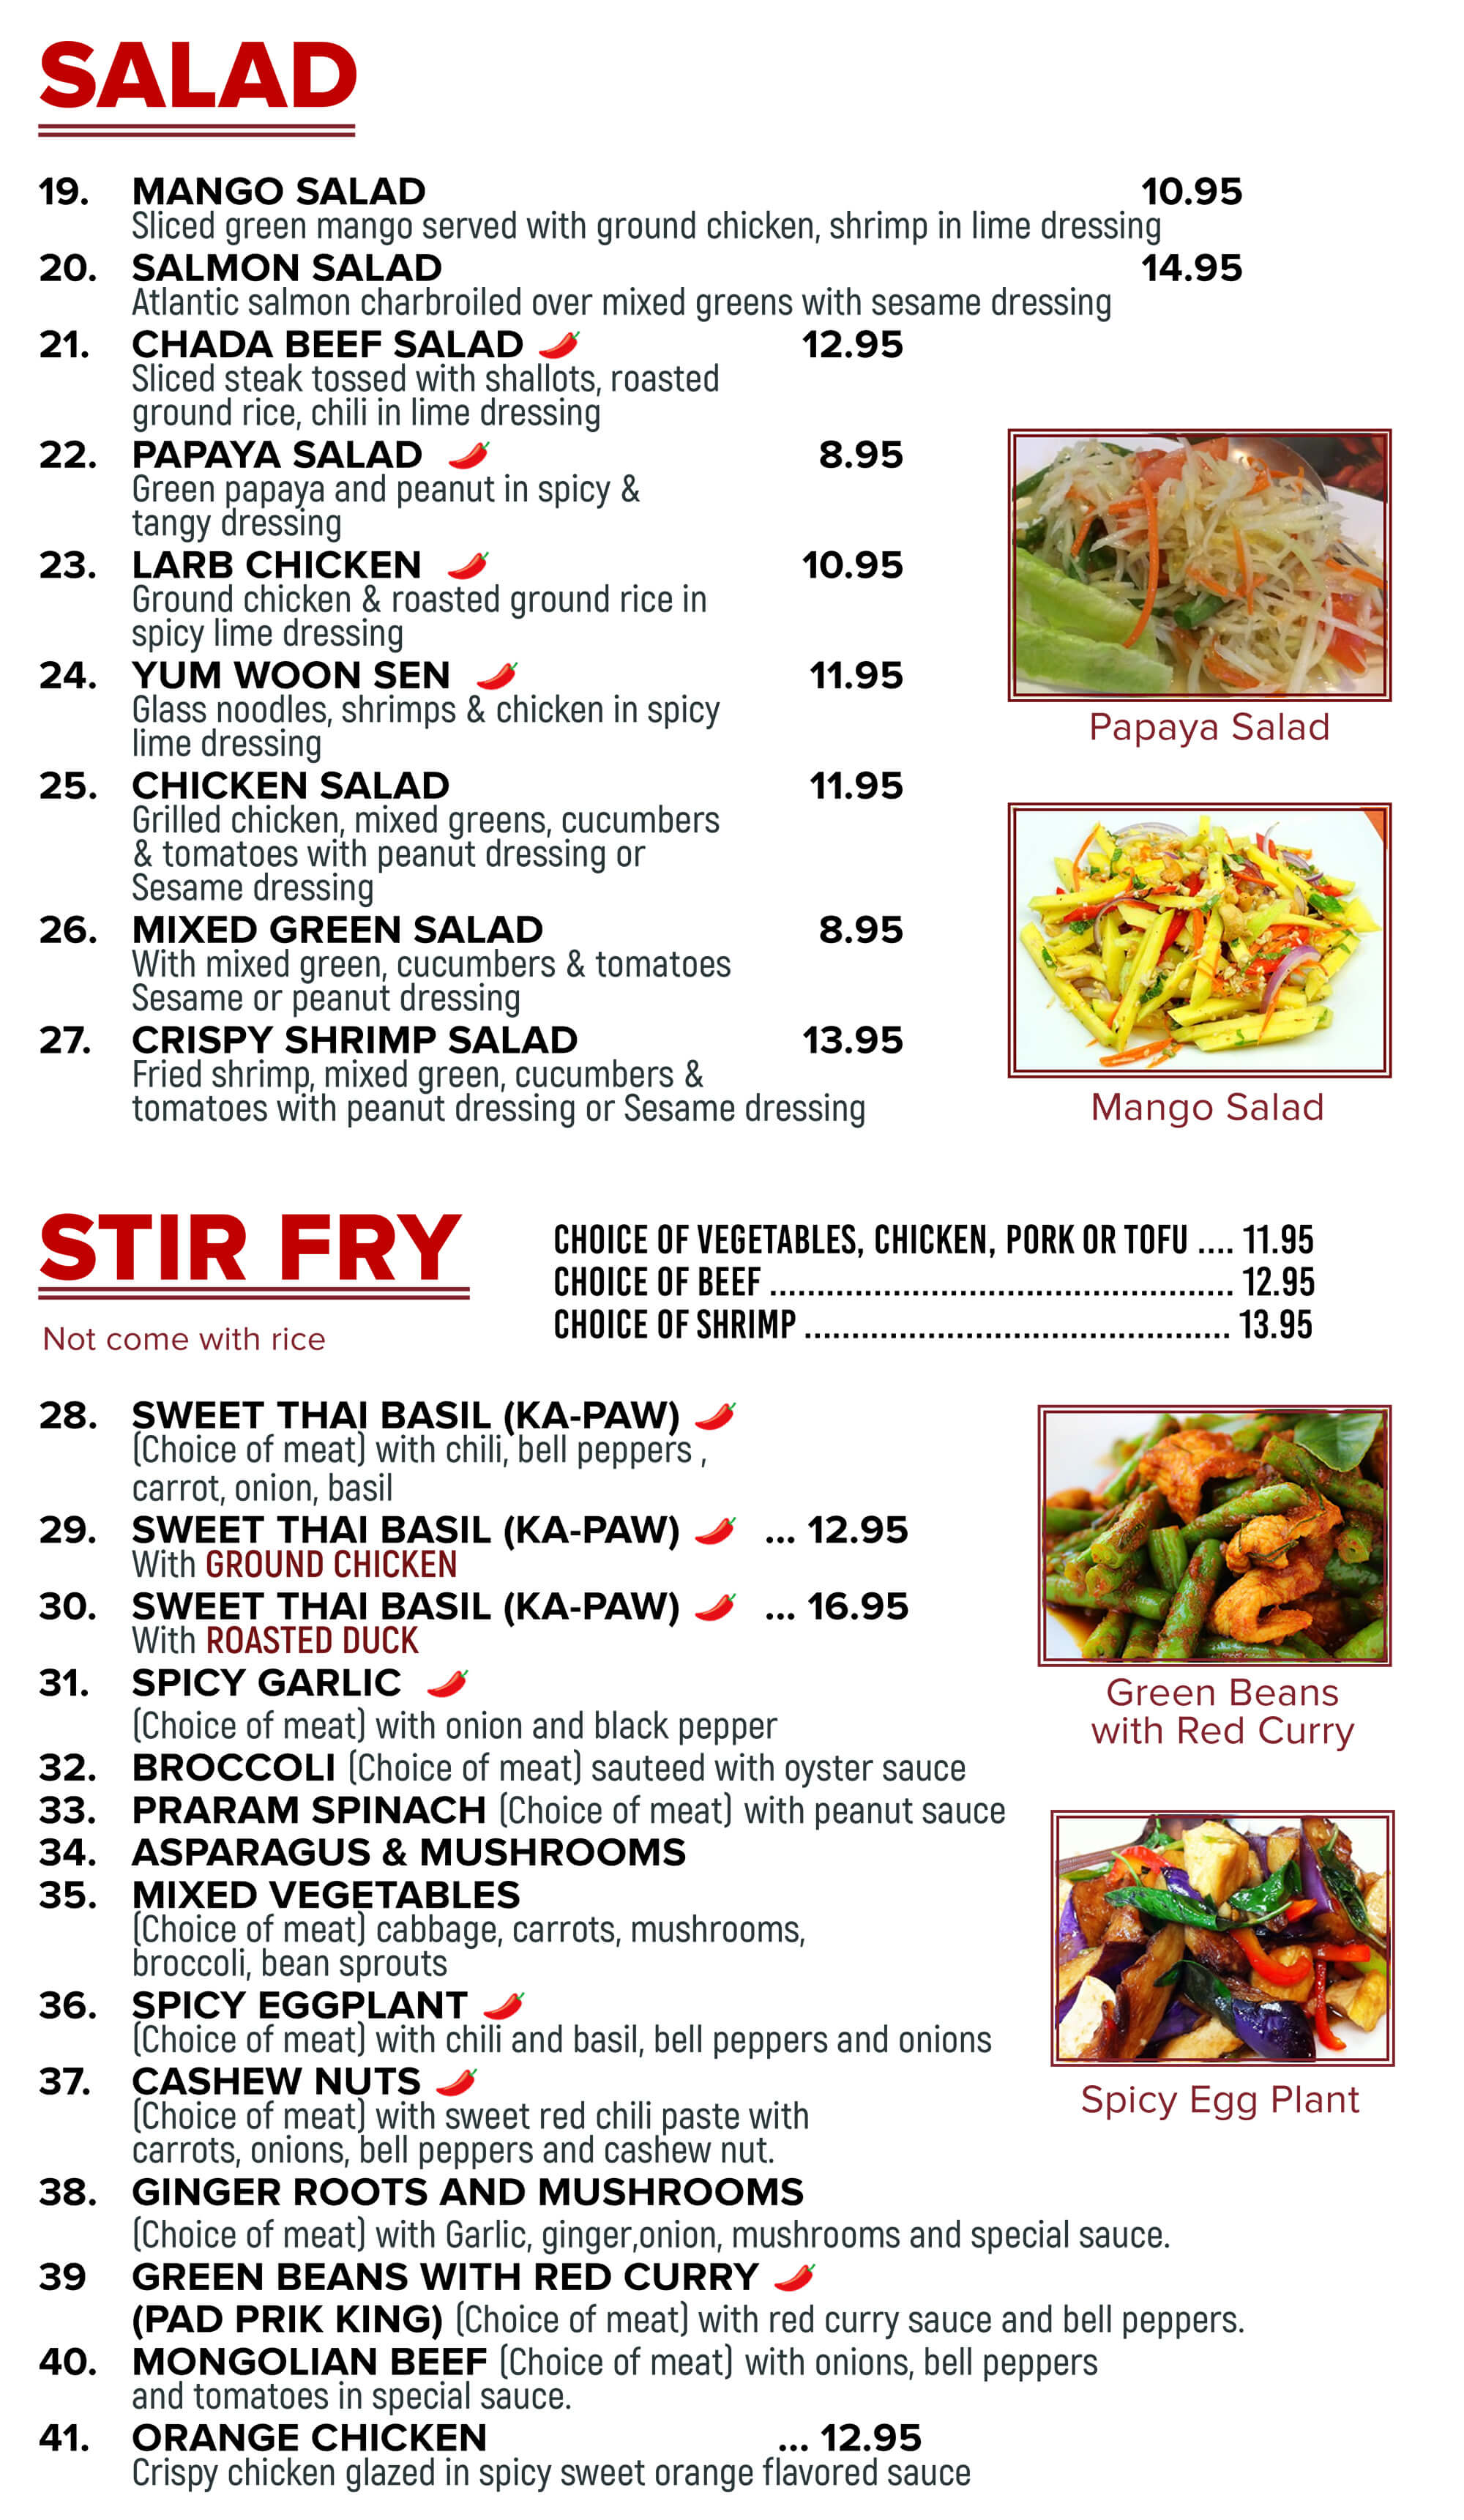 Chada Thai Cuisine Menu - Page 2